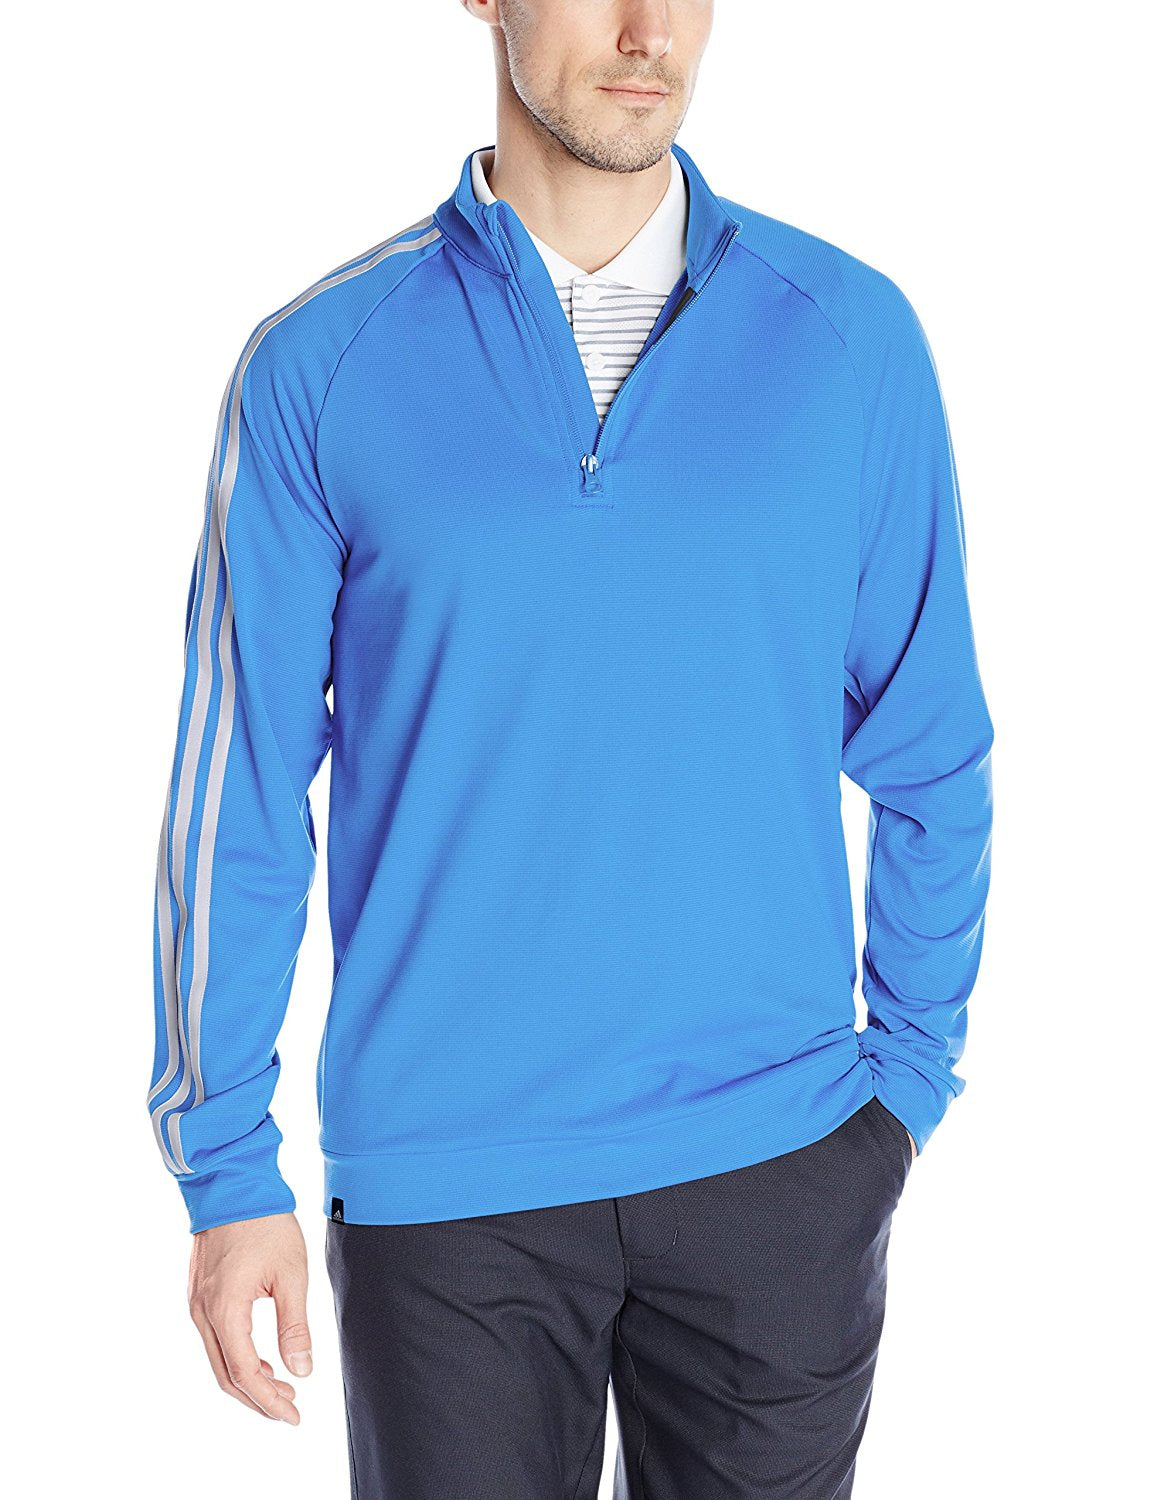 Adidas Golf Men's 3-Stripes 1/4 Zip Top, 3 Color Options Fanletic